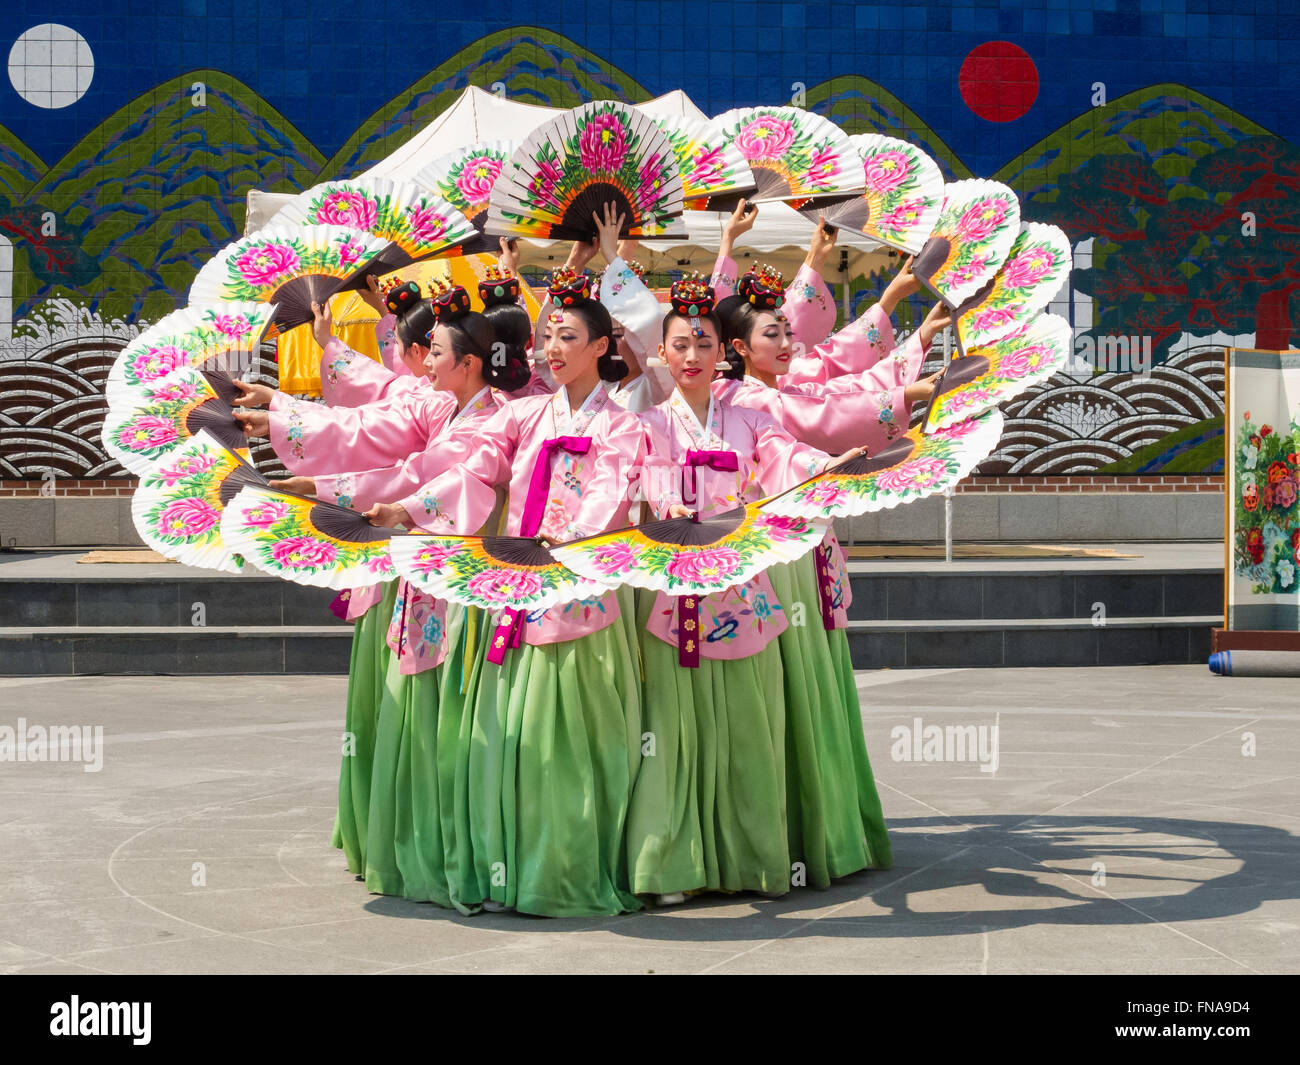 Les femmes traditionnelles danseurs, Insa-dong, Séoul, Corée du Sud Banque D'Images